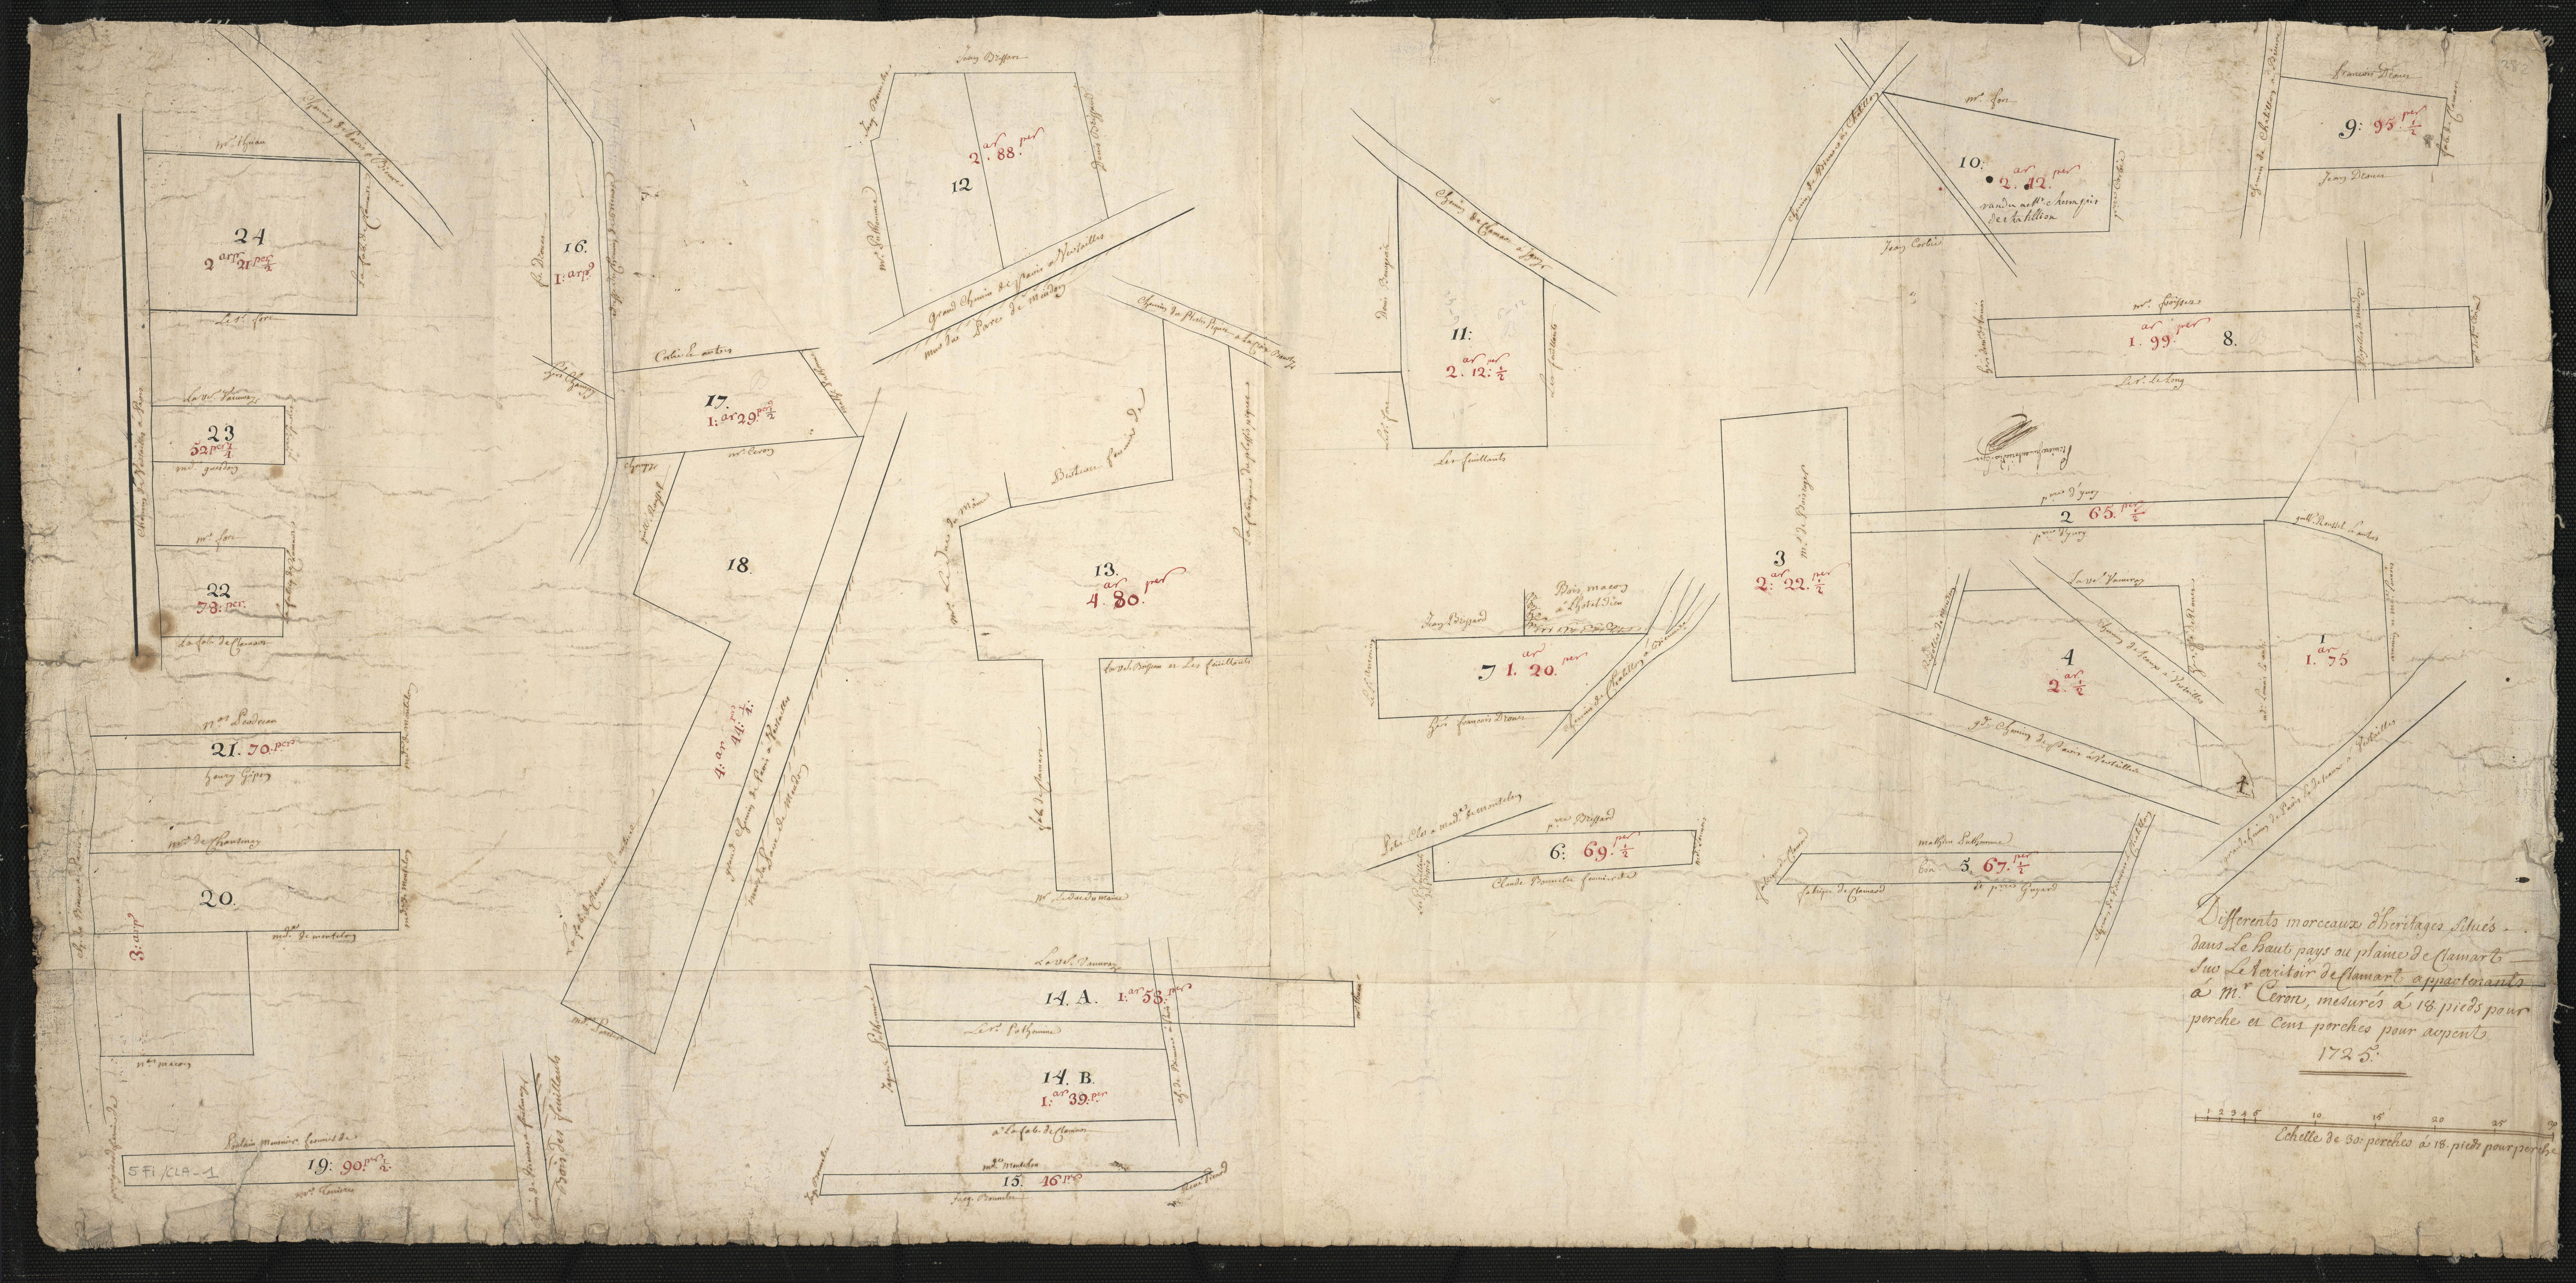 Diffèrents morceaux d'héritage situés dans le haut pays ou plaine de Clamart sur le territoire de Clamart appartenant à M. Céron, mesurés à 18 pieds pour perche et cent perches par arpent. 1725.